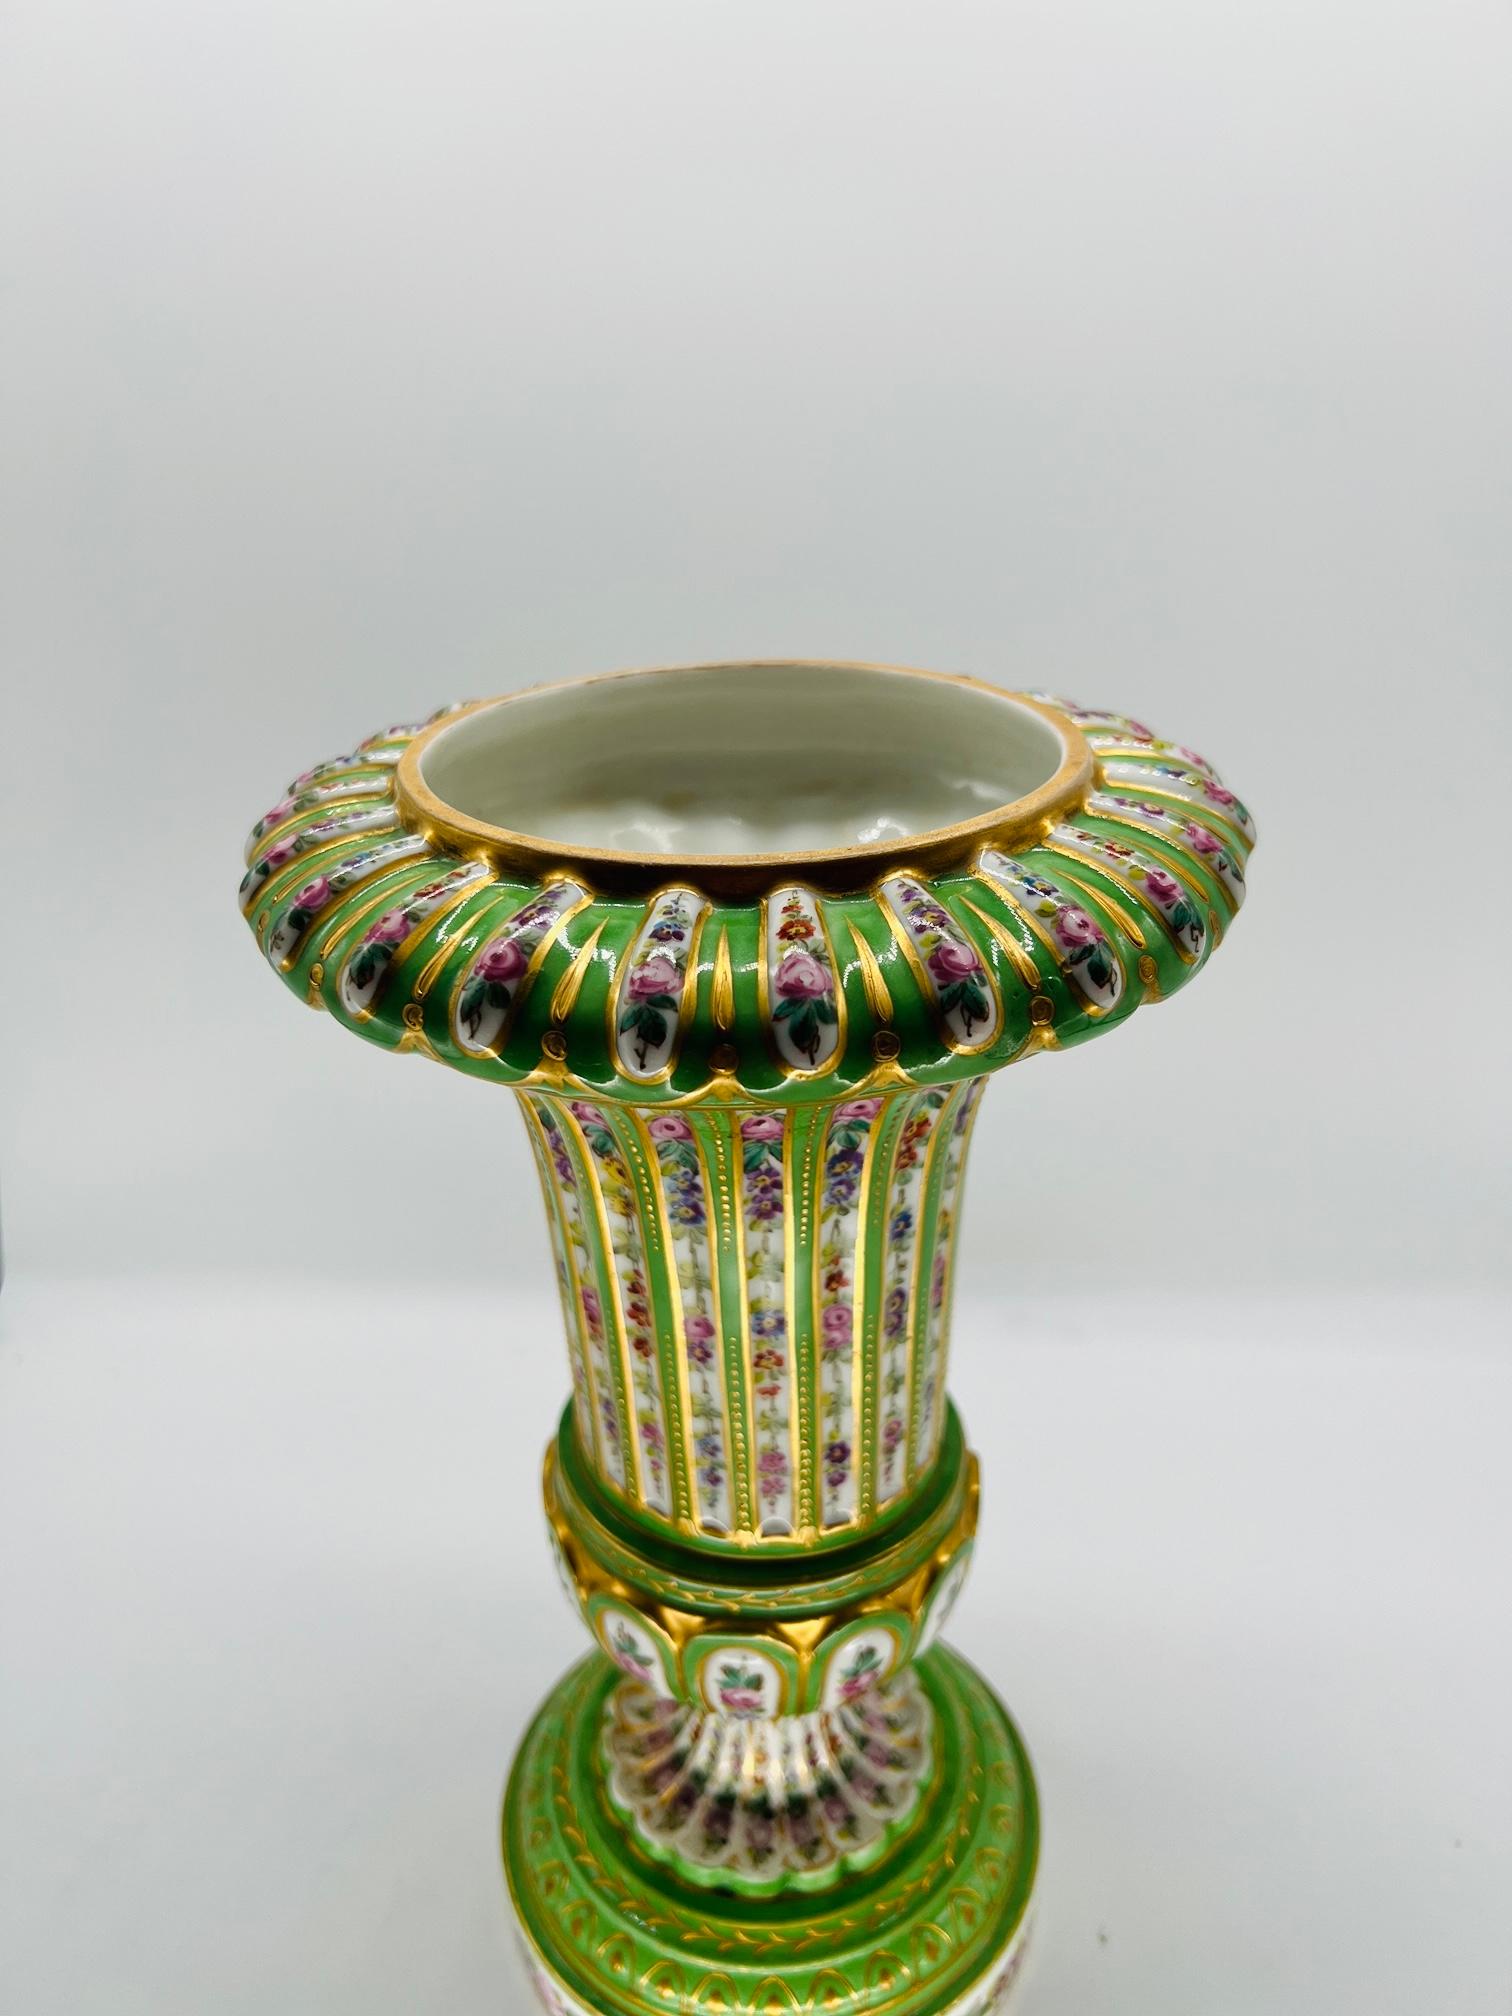 Sèvres (französisch, gegründet 1756), gekennzeichnet für 1770.

Urne oder Vase aus antikem französischem Porzellan mit grünem Porzellansockel und weißen Bodenfenstern mit üppigem Blumendekor, die durch feine Goldperlen getrennt sind. Das Oberteil